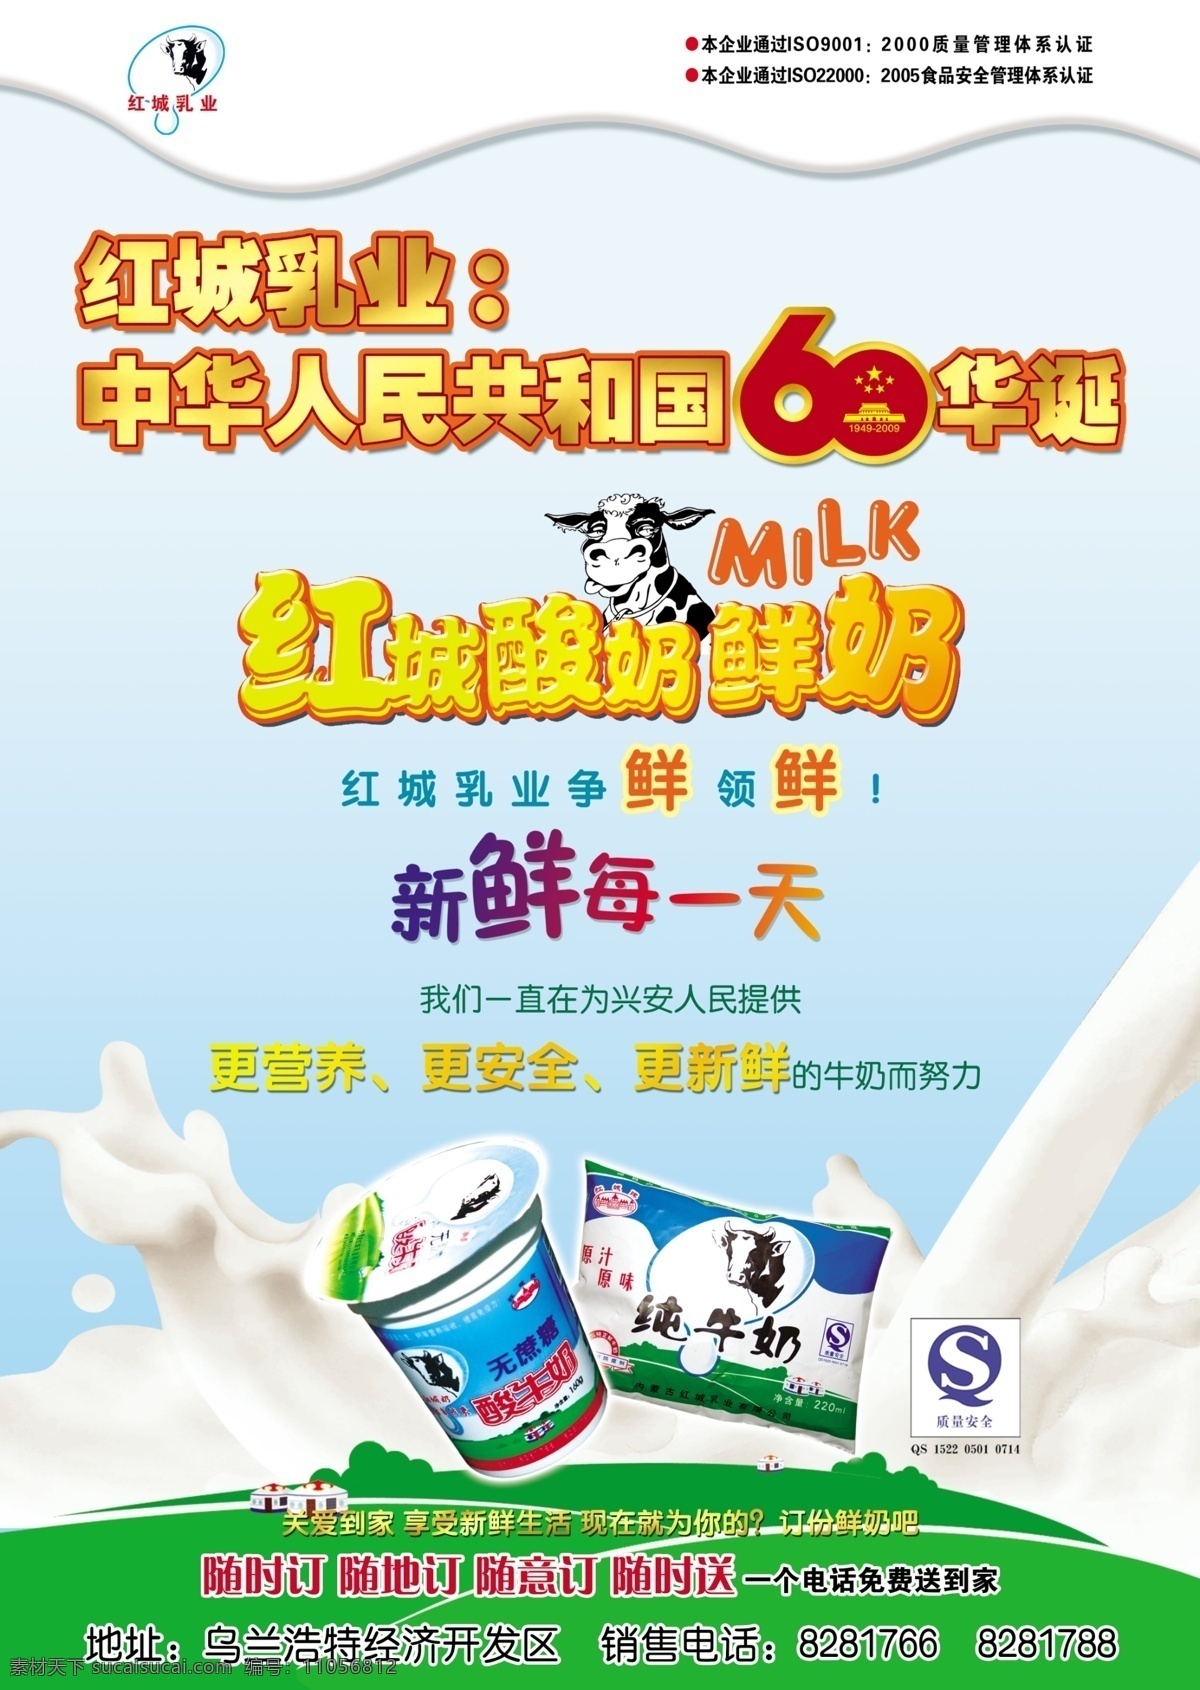 红城 乳液 广告宣传 红城乳液 红城酸奶 鲜奶 卡通牛 新鲜每一天 dm宣传单 广告设计模板 源文件